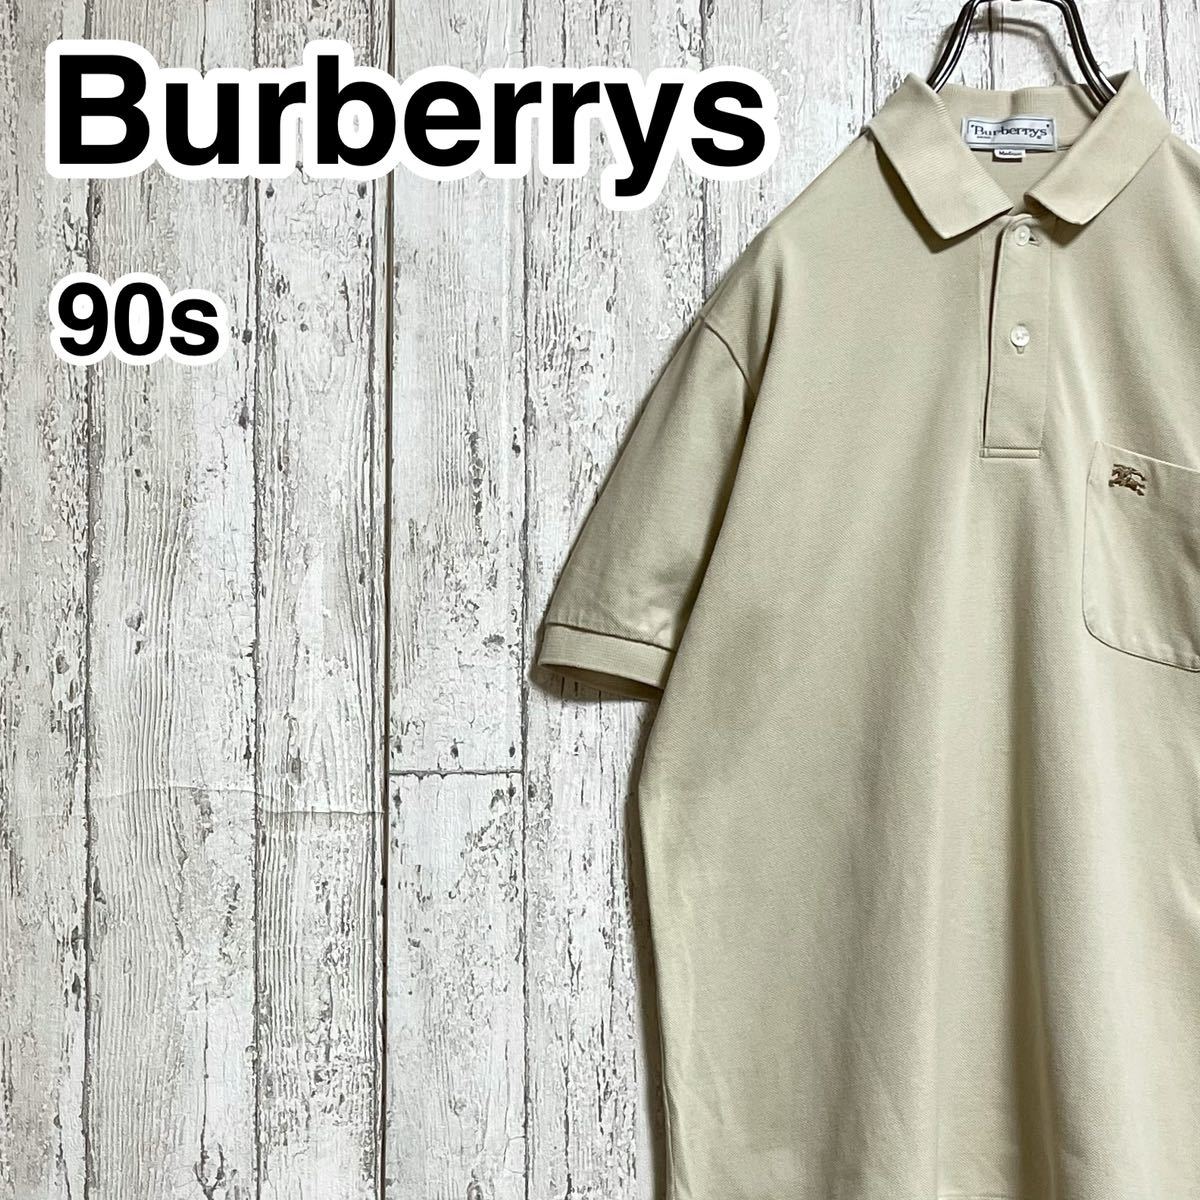 【アースカラー】バーバリーズ Burberrys 半袖 ポロシャツ C-TK83 Mサイズ ベージュ 90s ホースロゴ 22-102